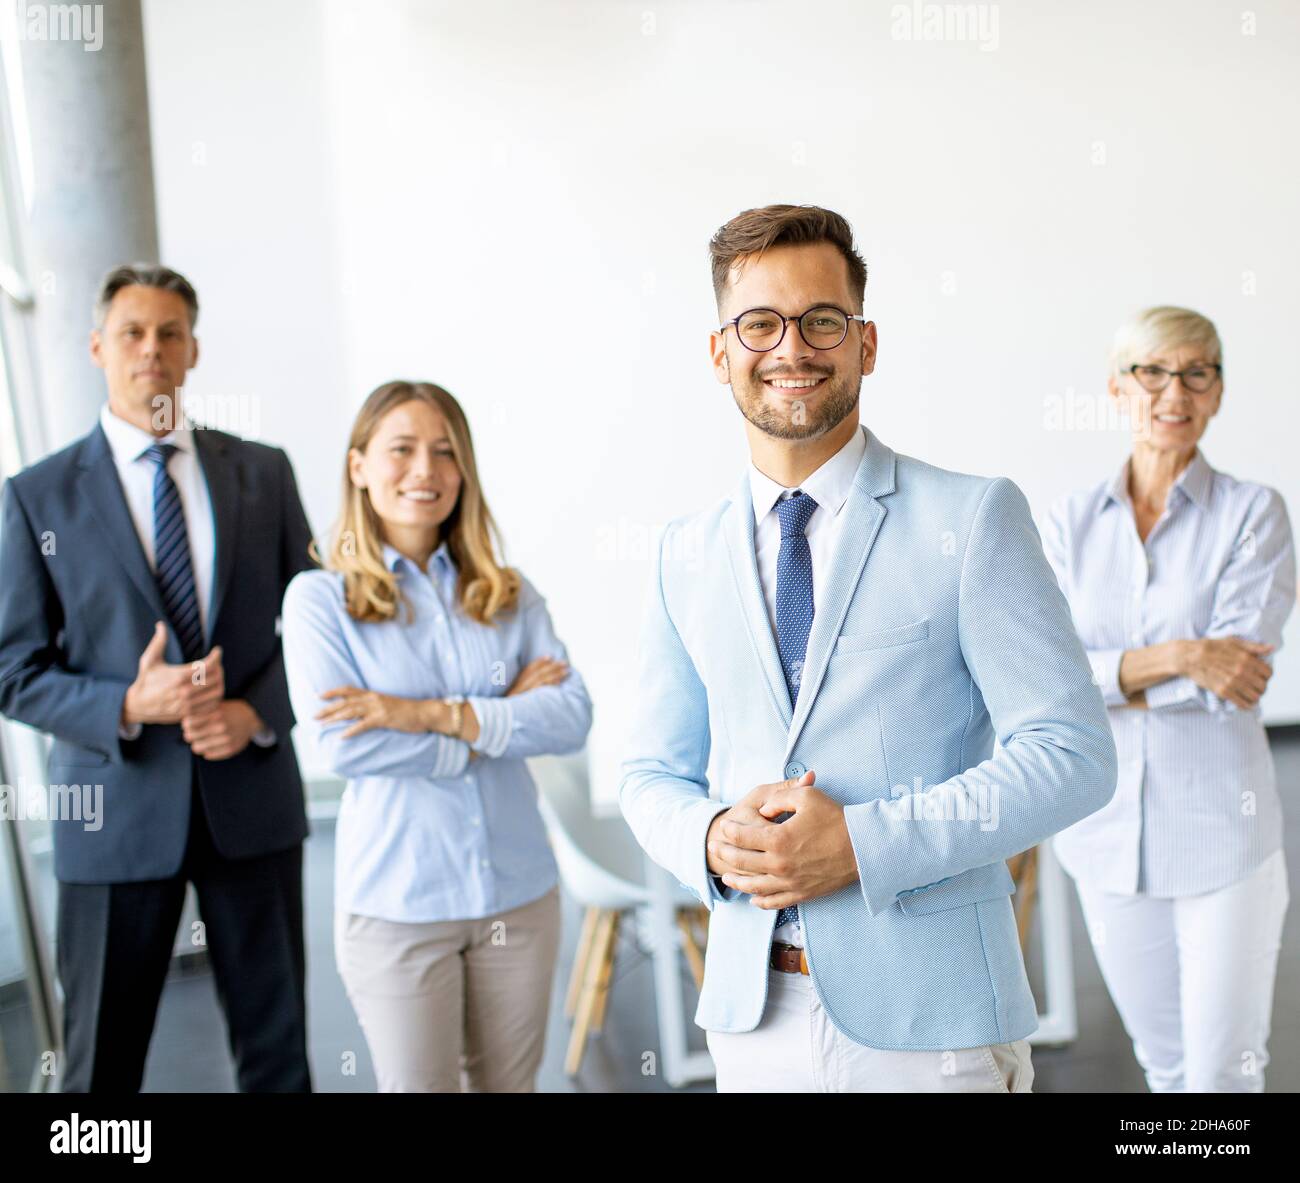 Gruppe von Geschäftsleuten, die zusammen im Büro mit stehen Ihr junger Bussinesführer Stockfoto